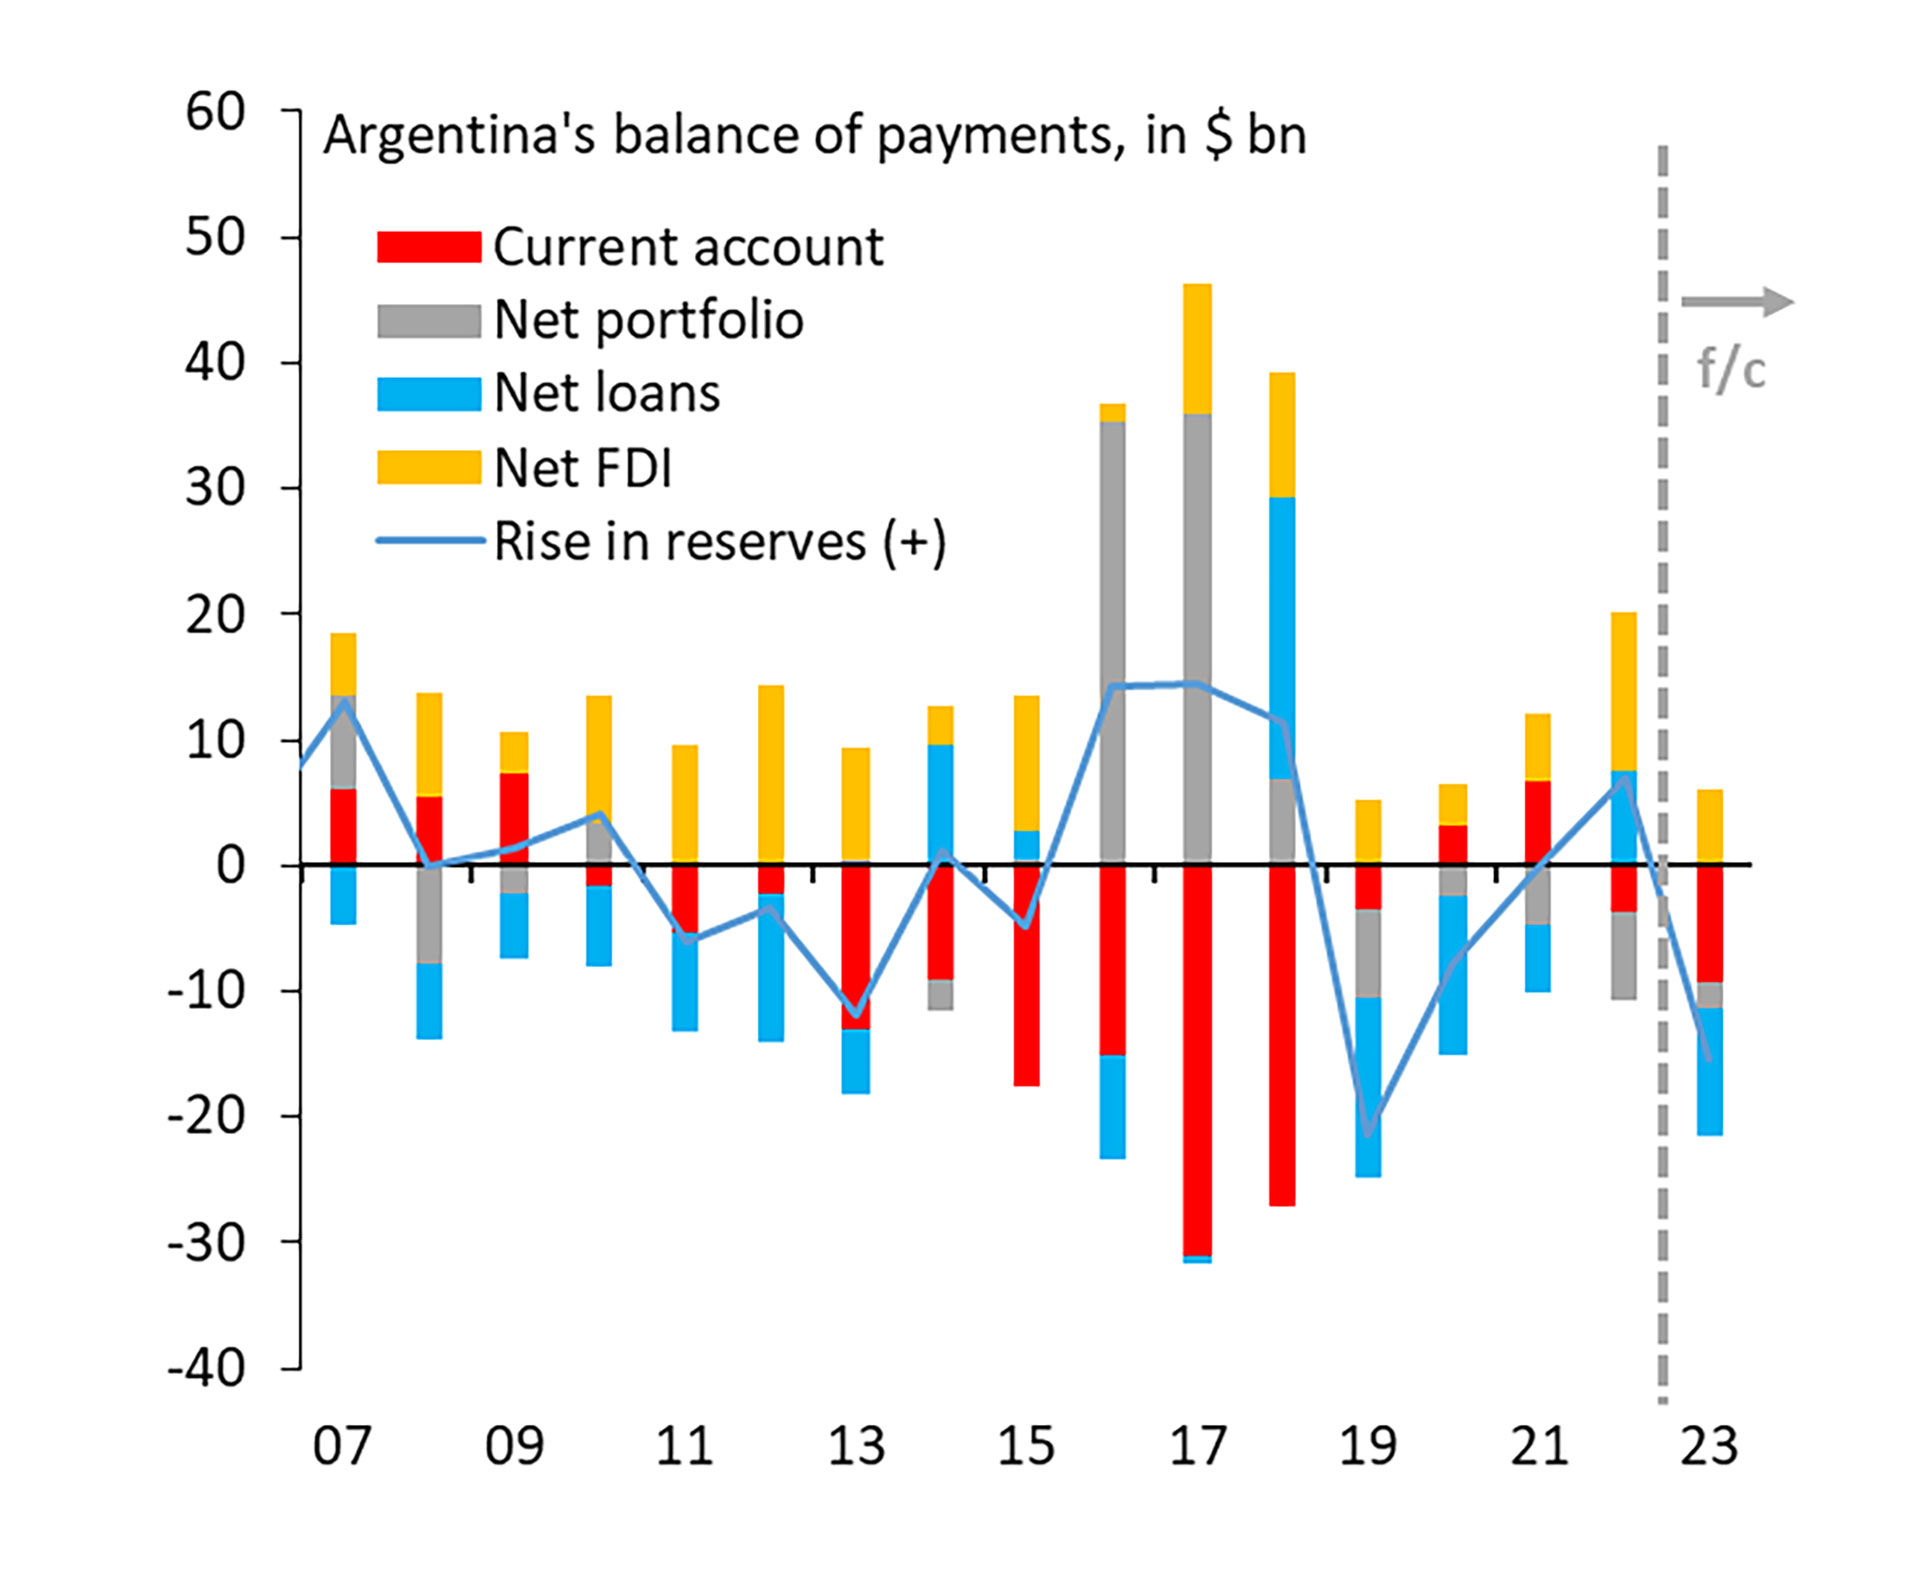 El déficit de la balanza de pagos de la Argentina
IIF